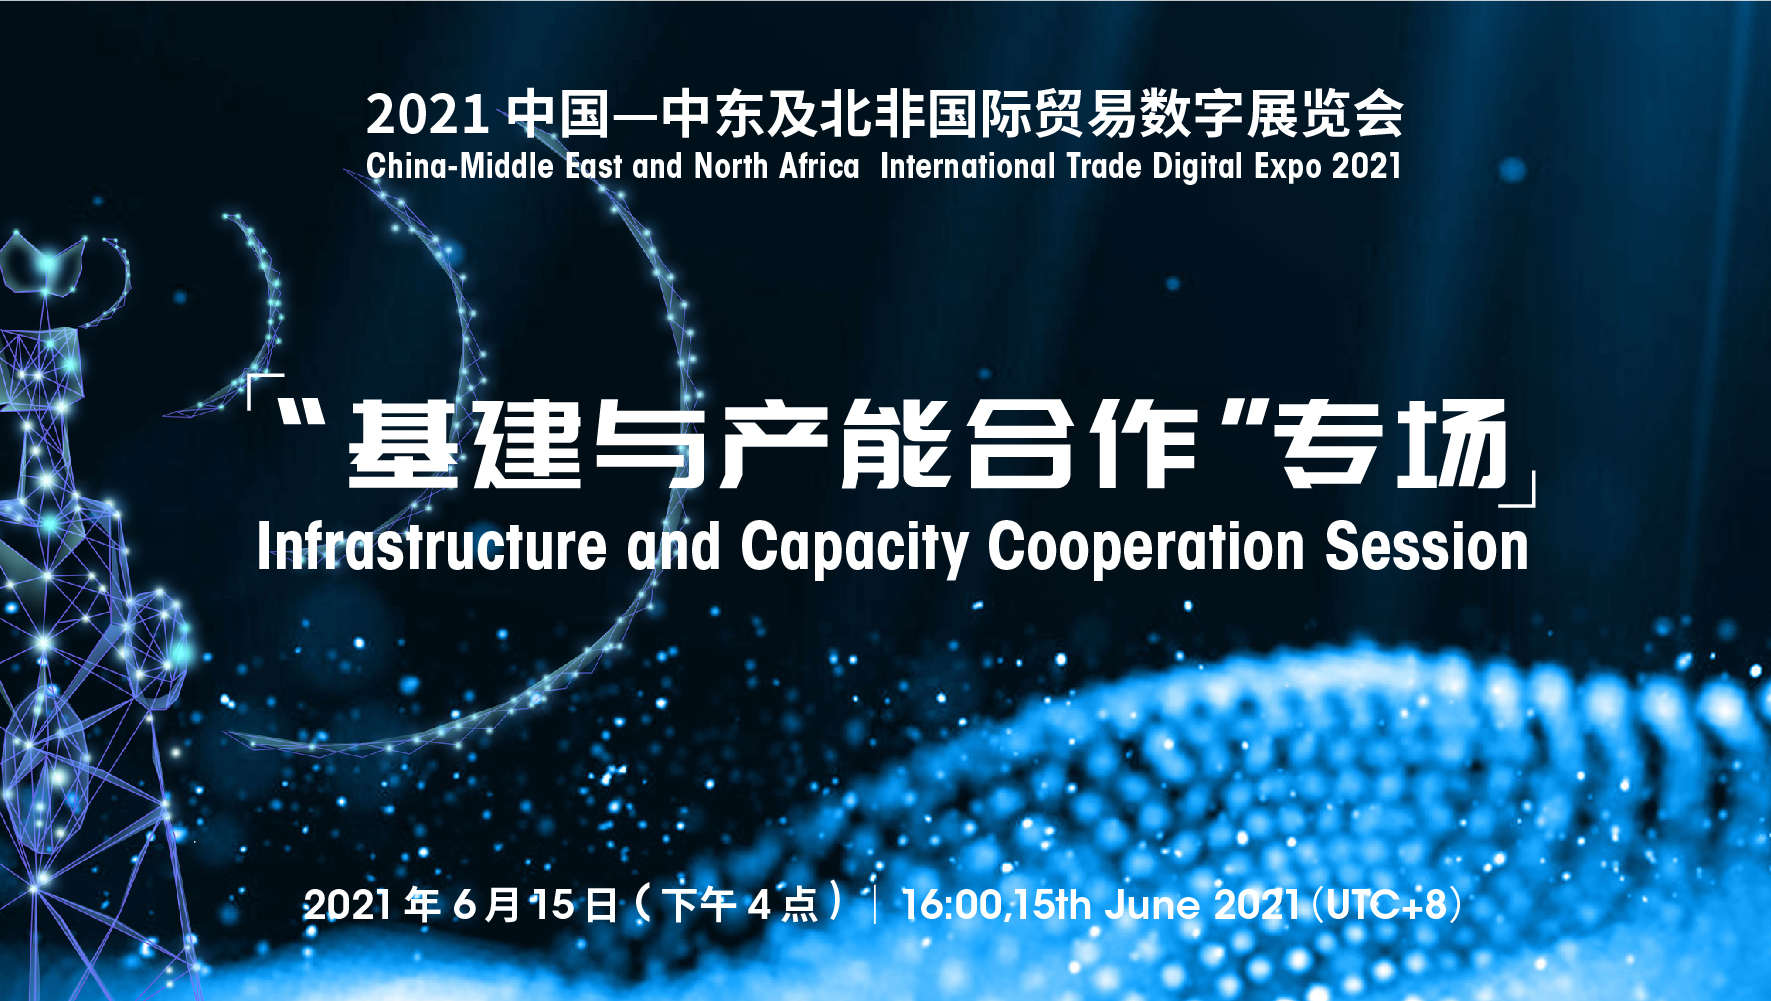 “2021年中国—<font color=#ff0000>中东</font>及北非国际贸易数字展”首场对接会“基建与产能合作”专场在线举办